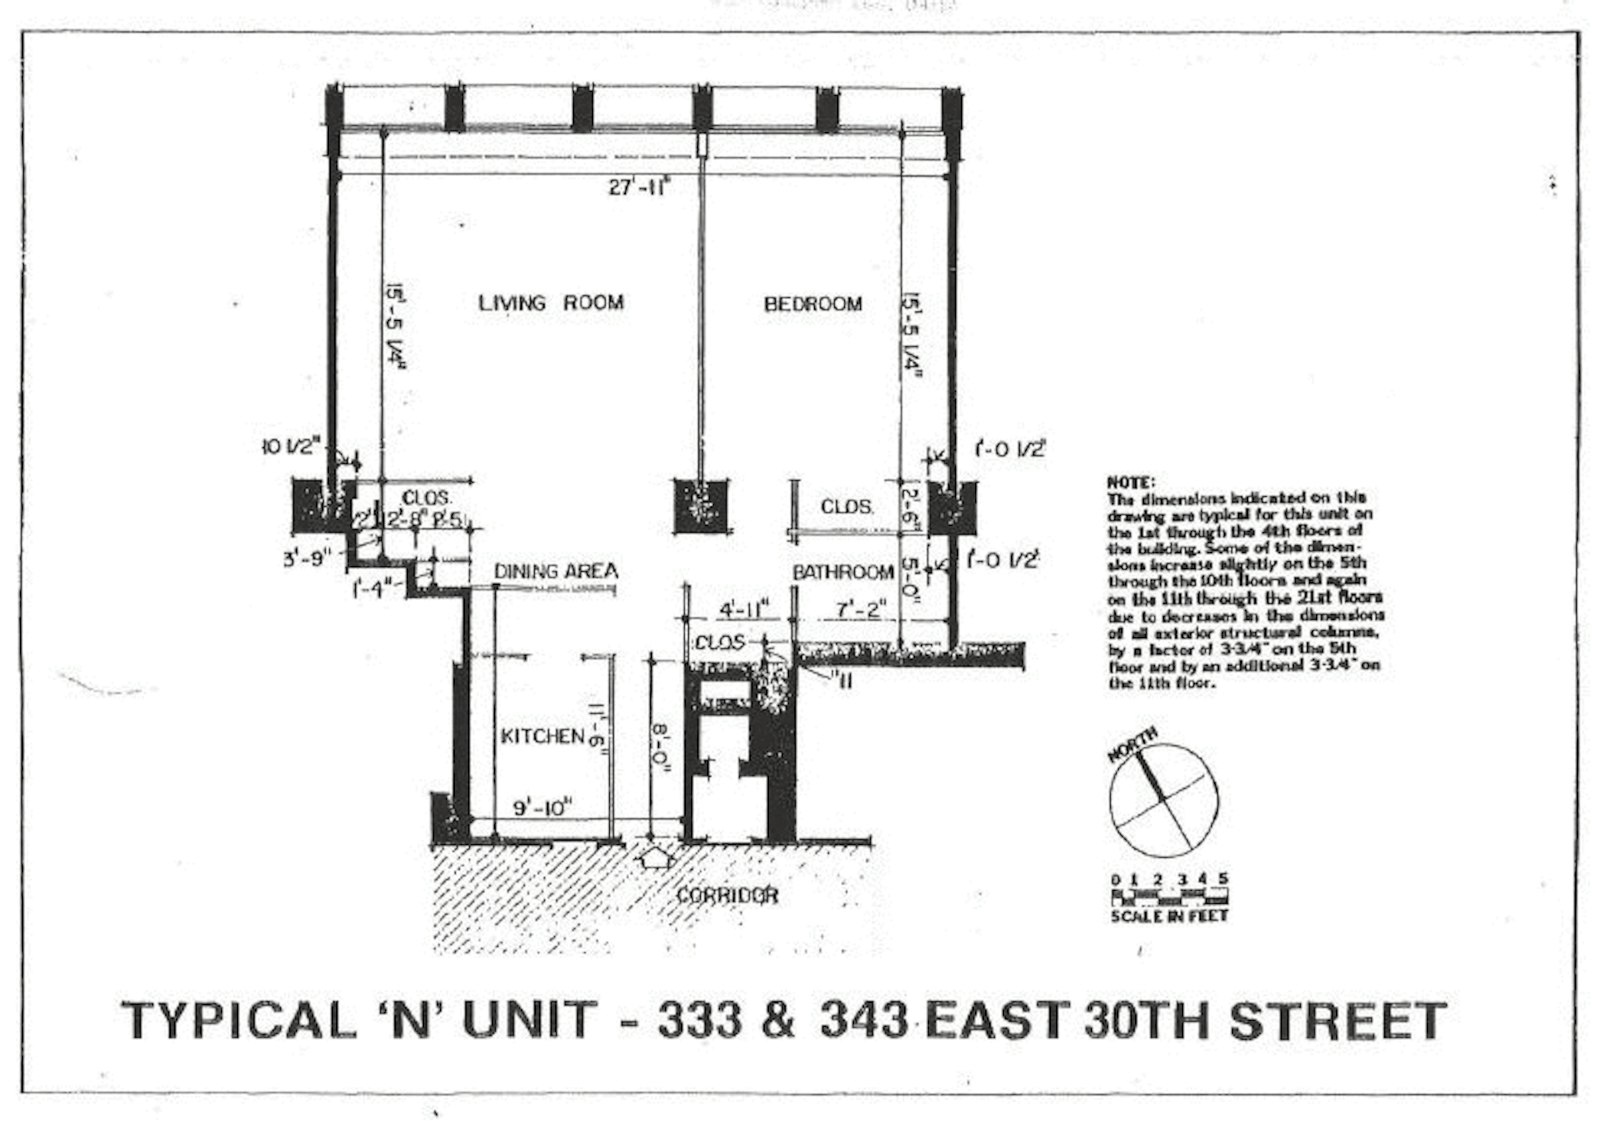 Floorplan for 333 East 30th Street, 2/N